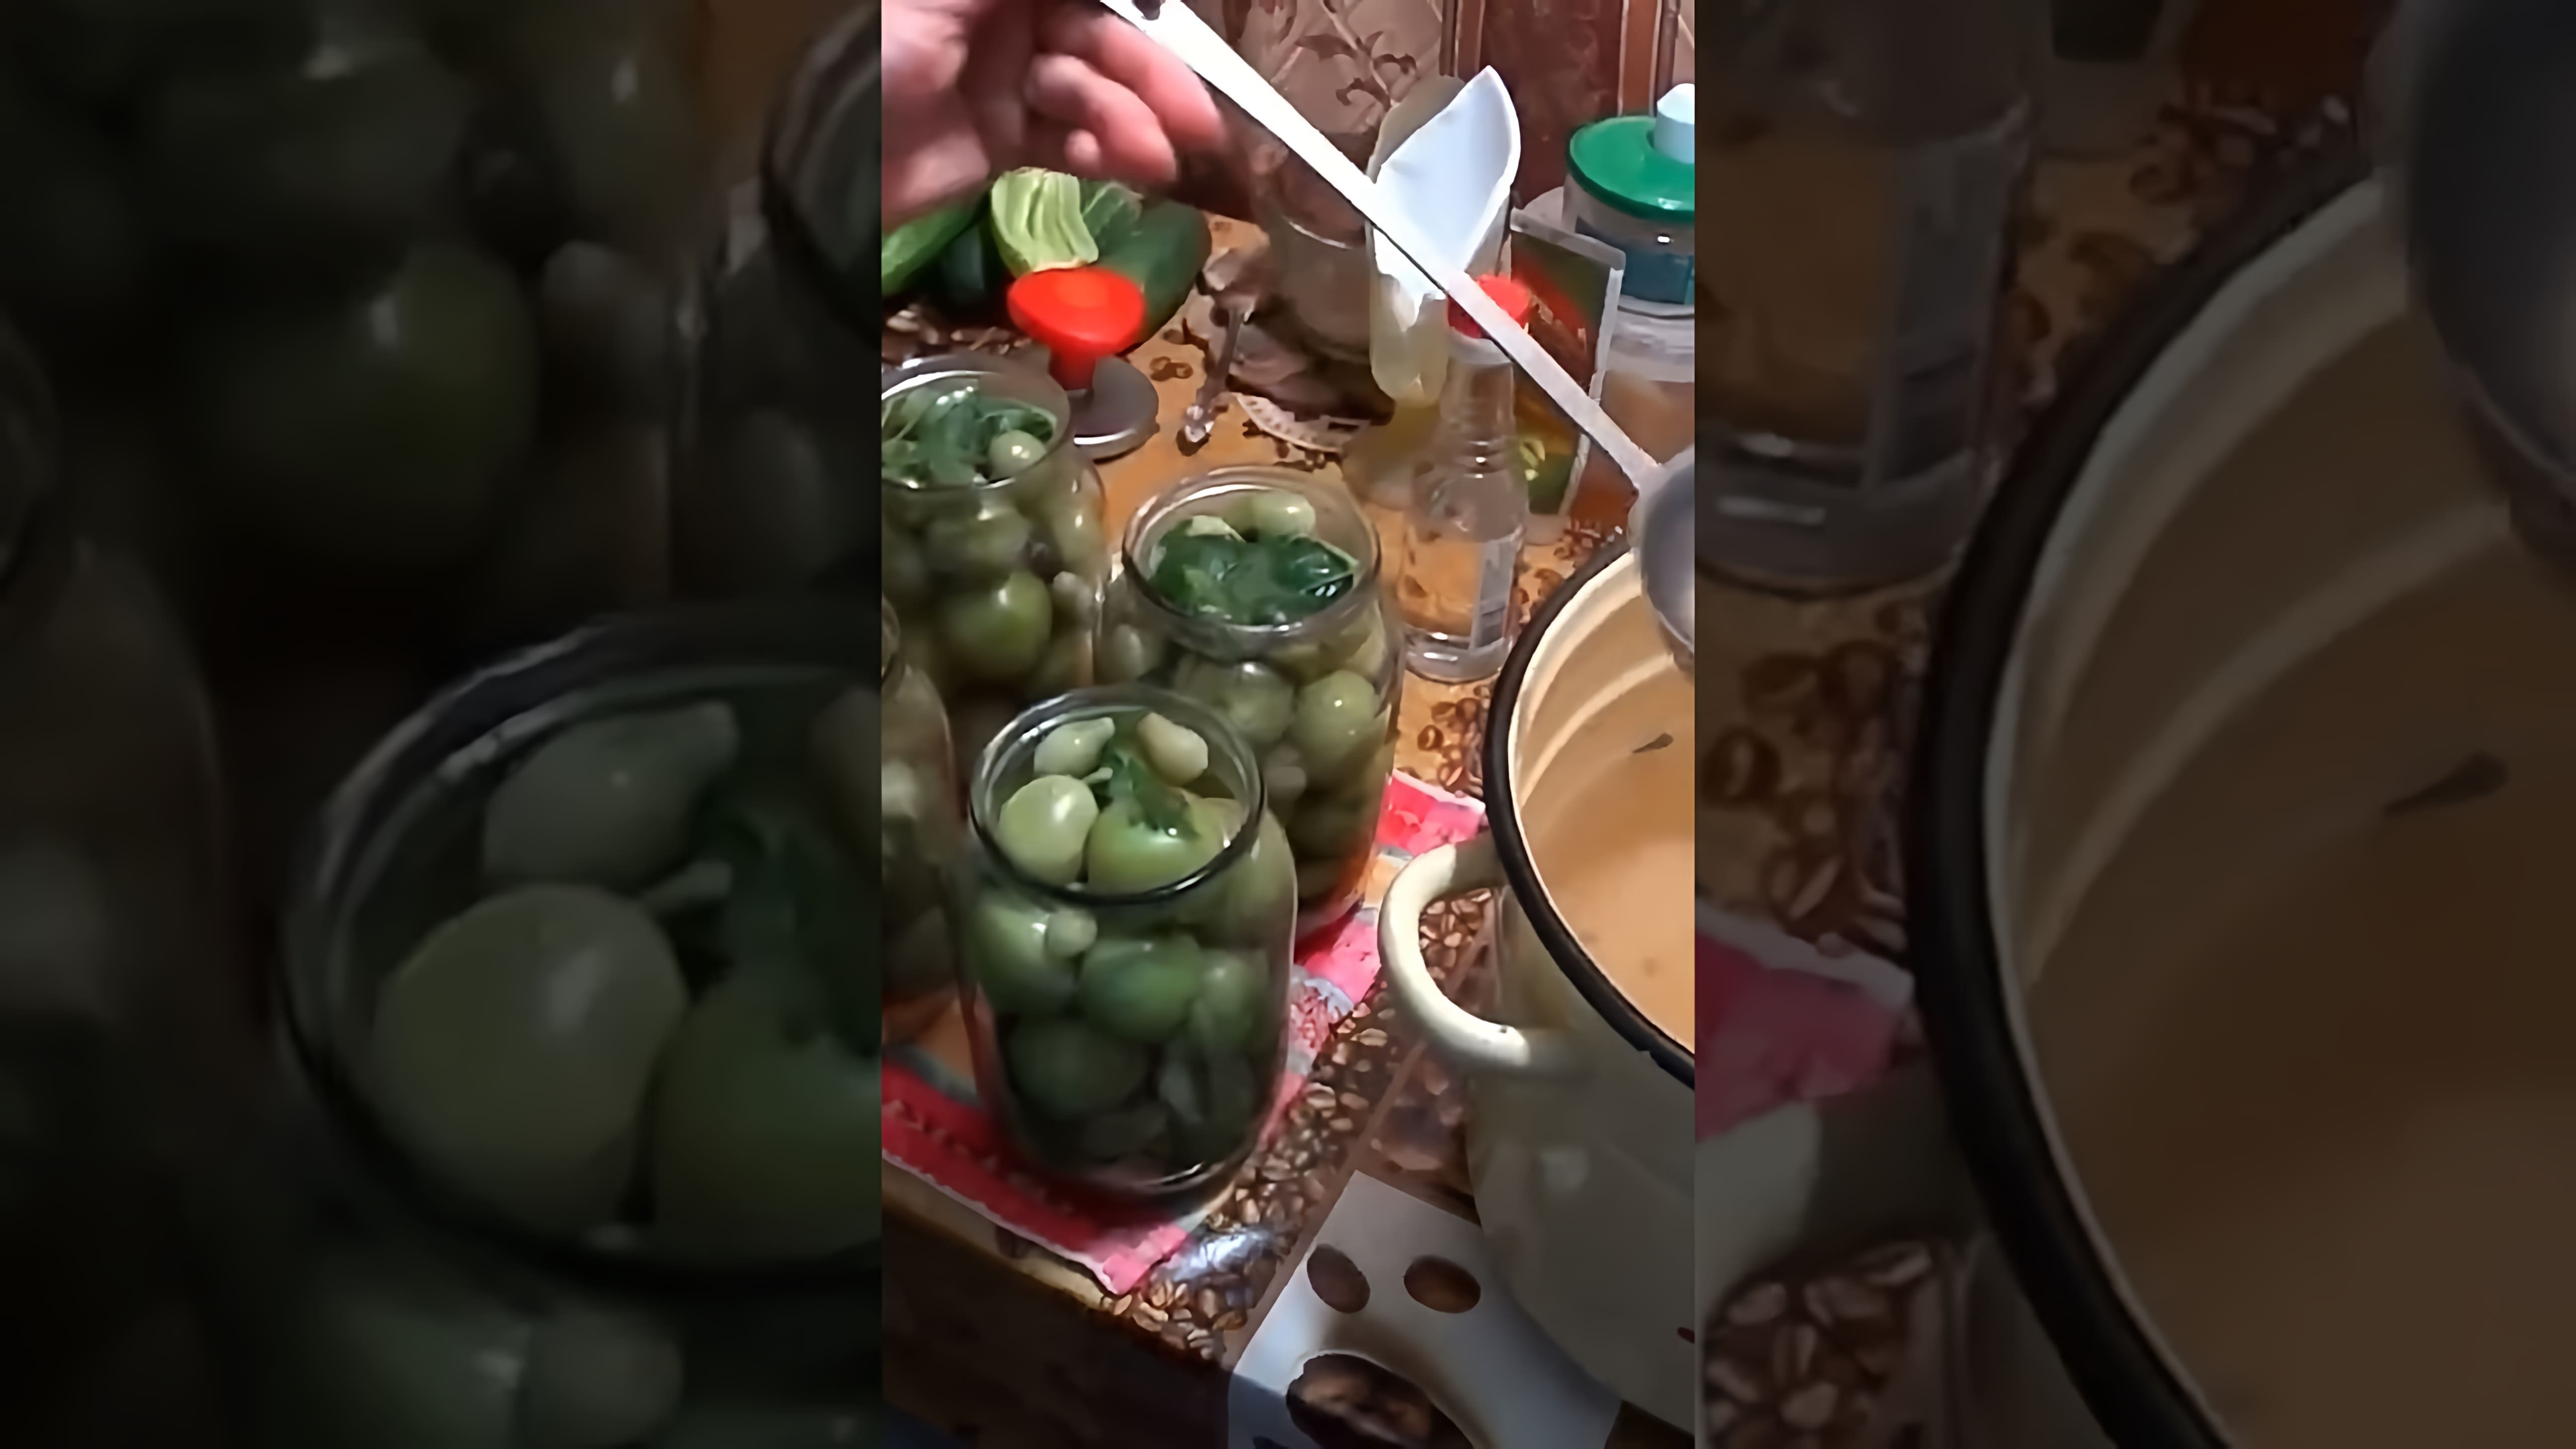 "Проверенный рецепт маринованных зелёных помидор" - это видео-ролик, который демонстрирует процесс приготовления вкусных и ароматных зелёных помидор